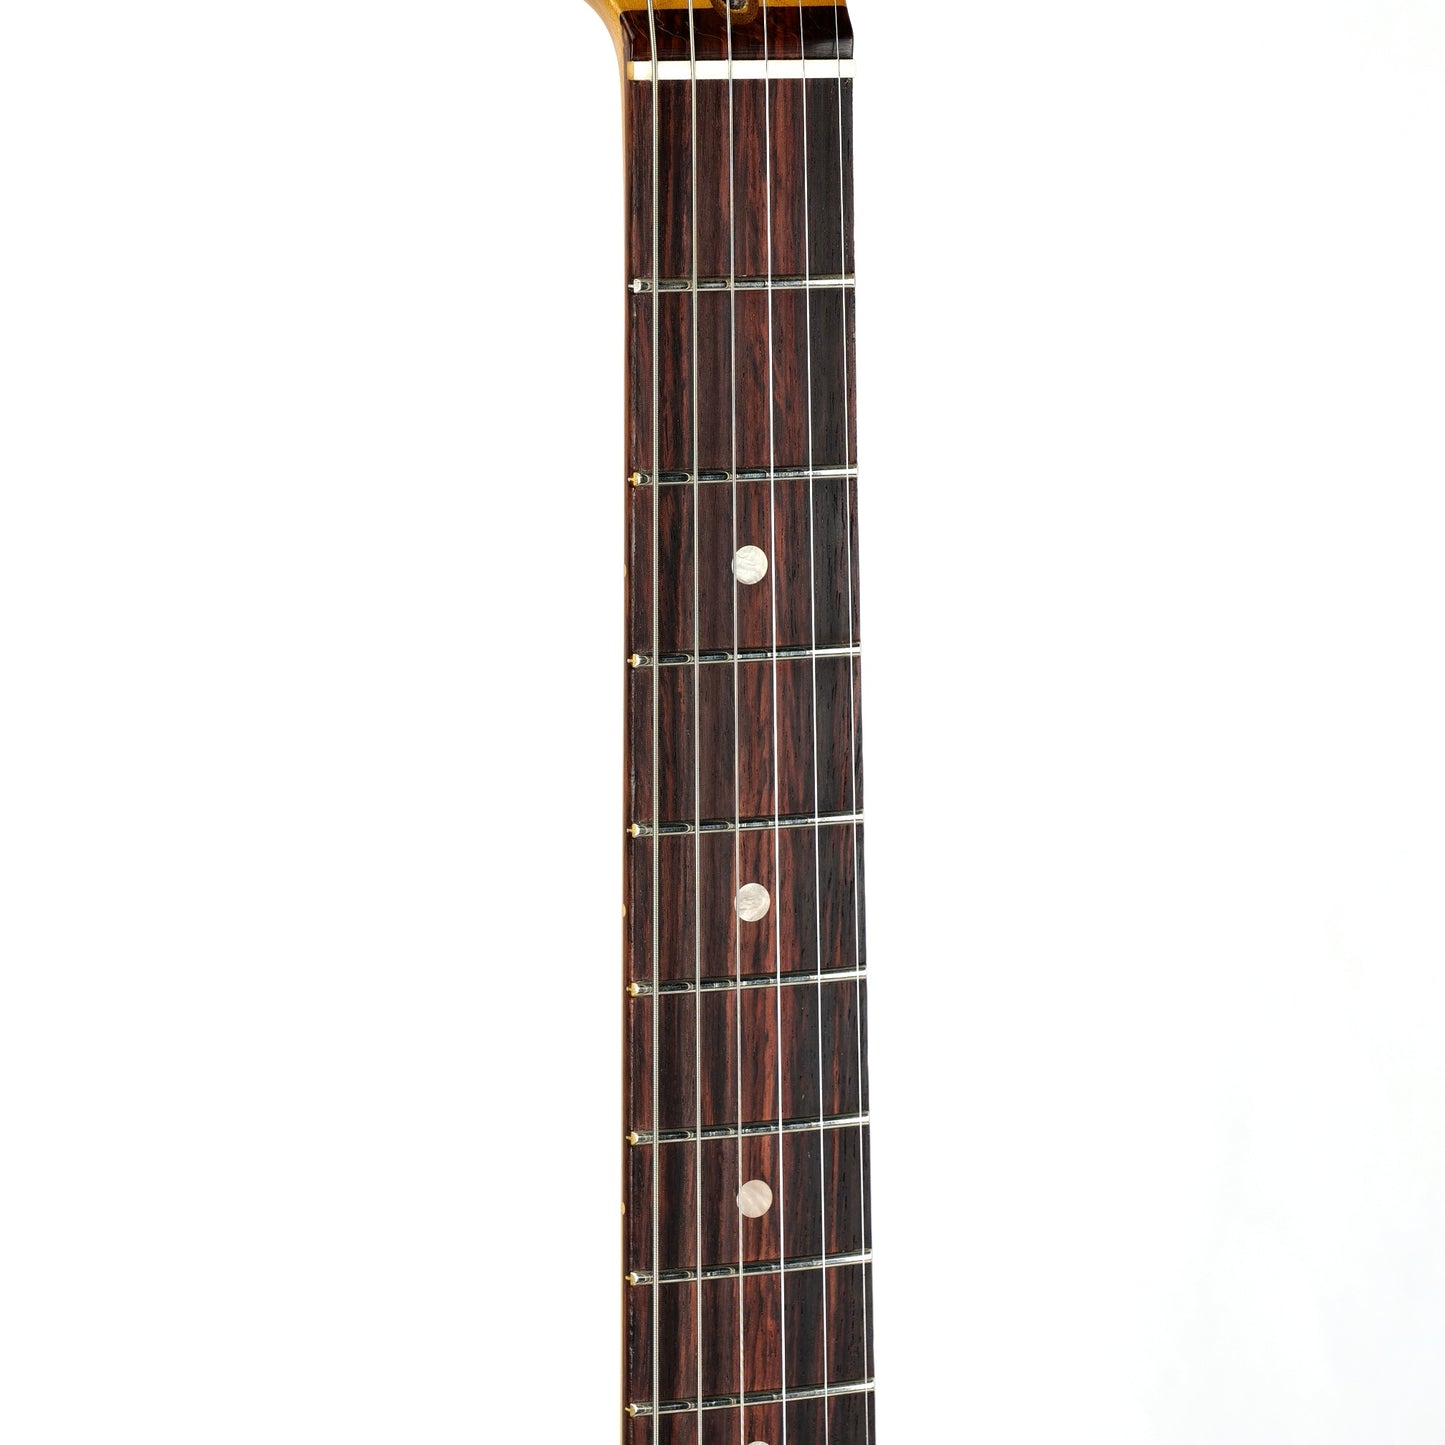 2023 Fender American Ultra Stratocaster HSS - Ultraburst